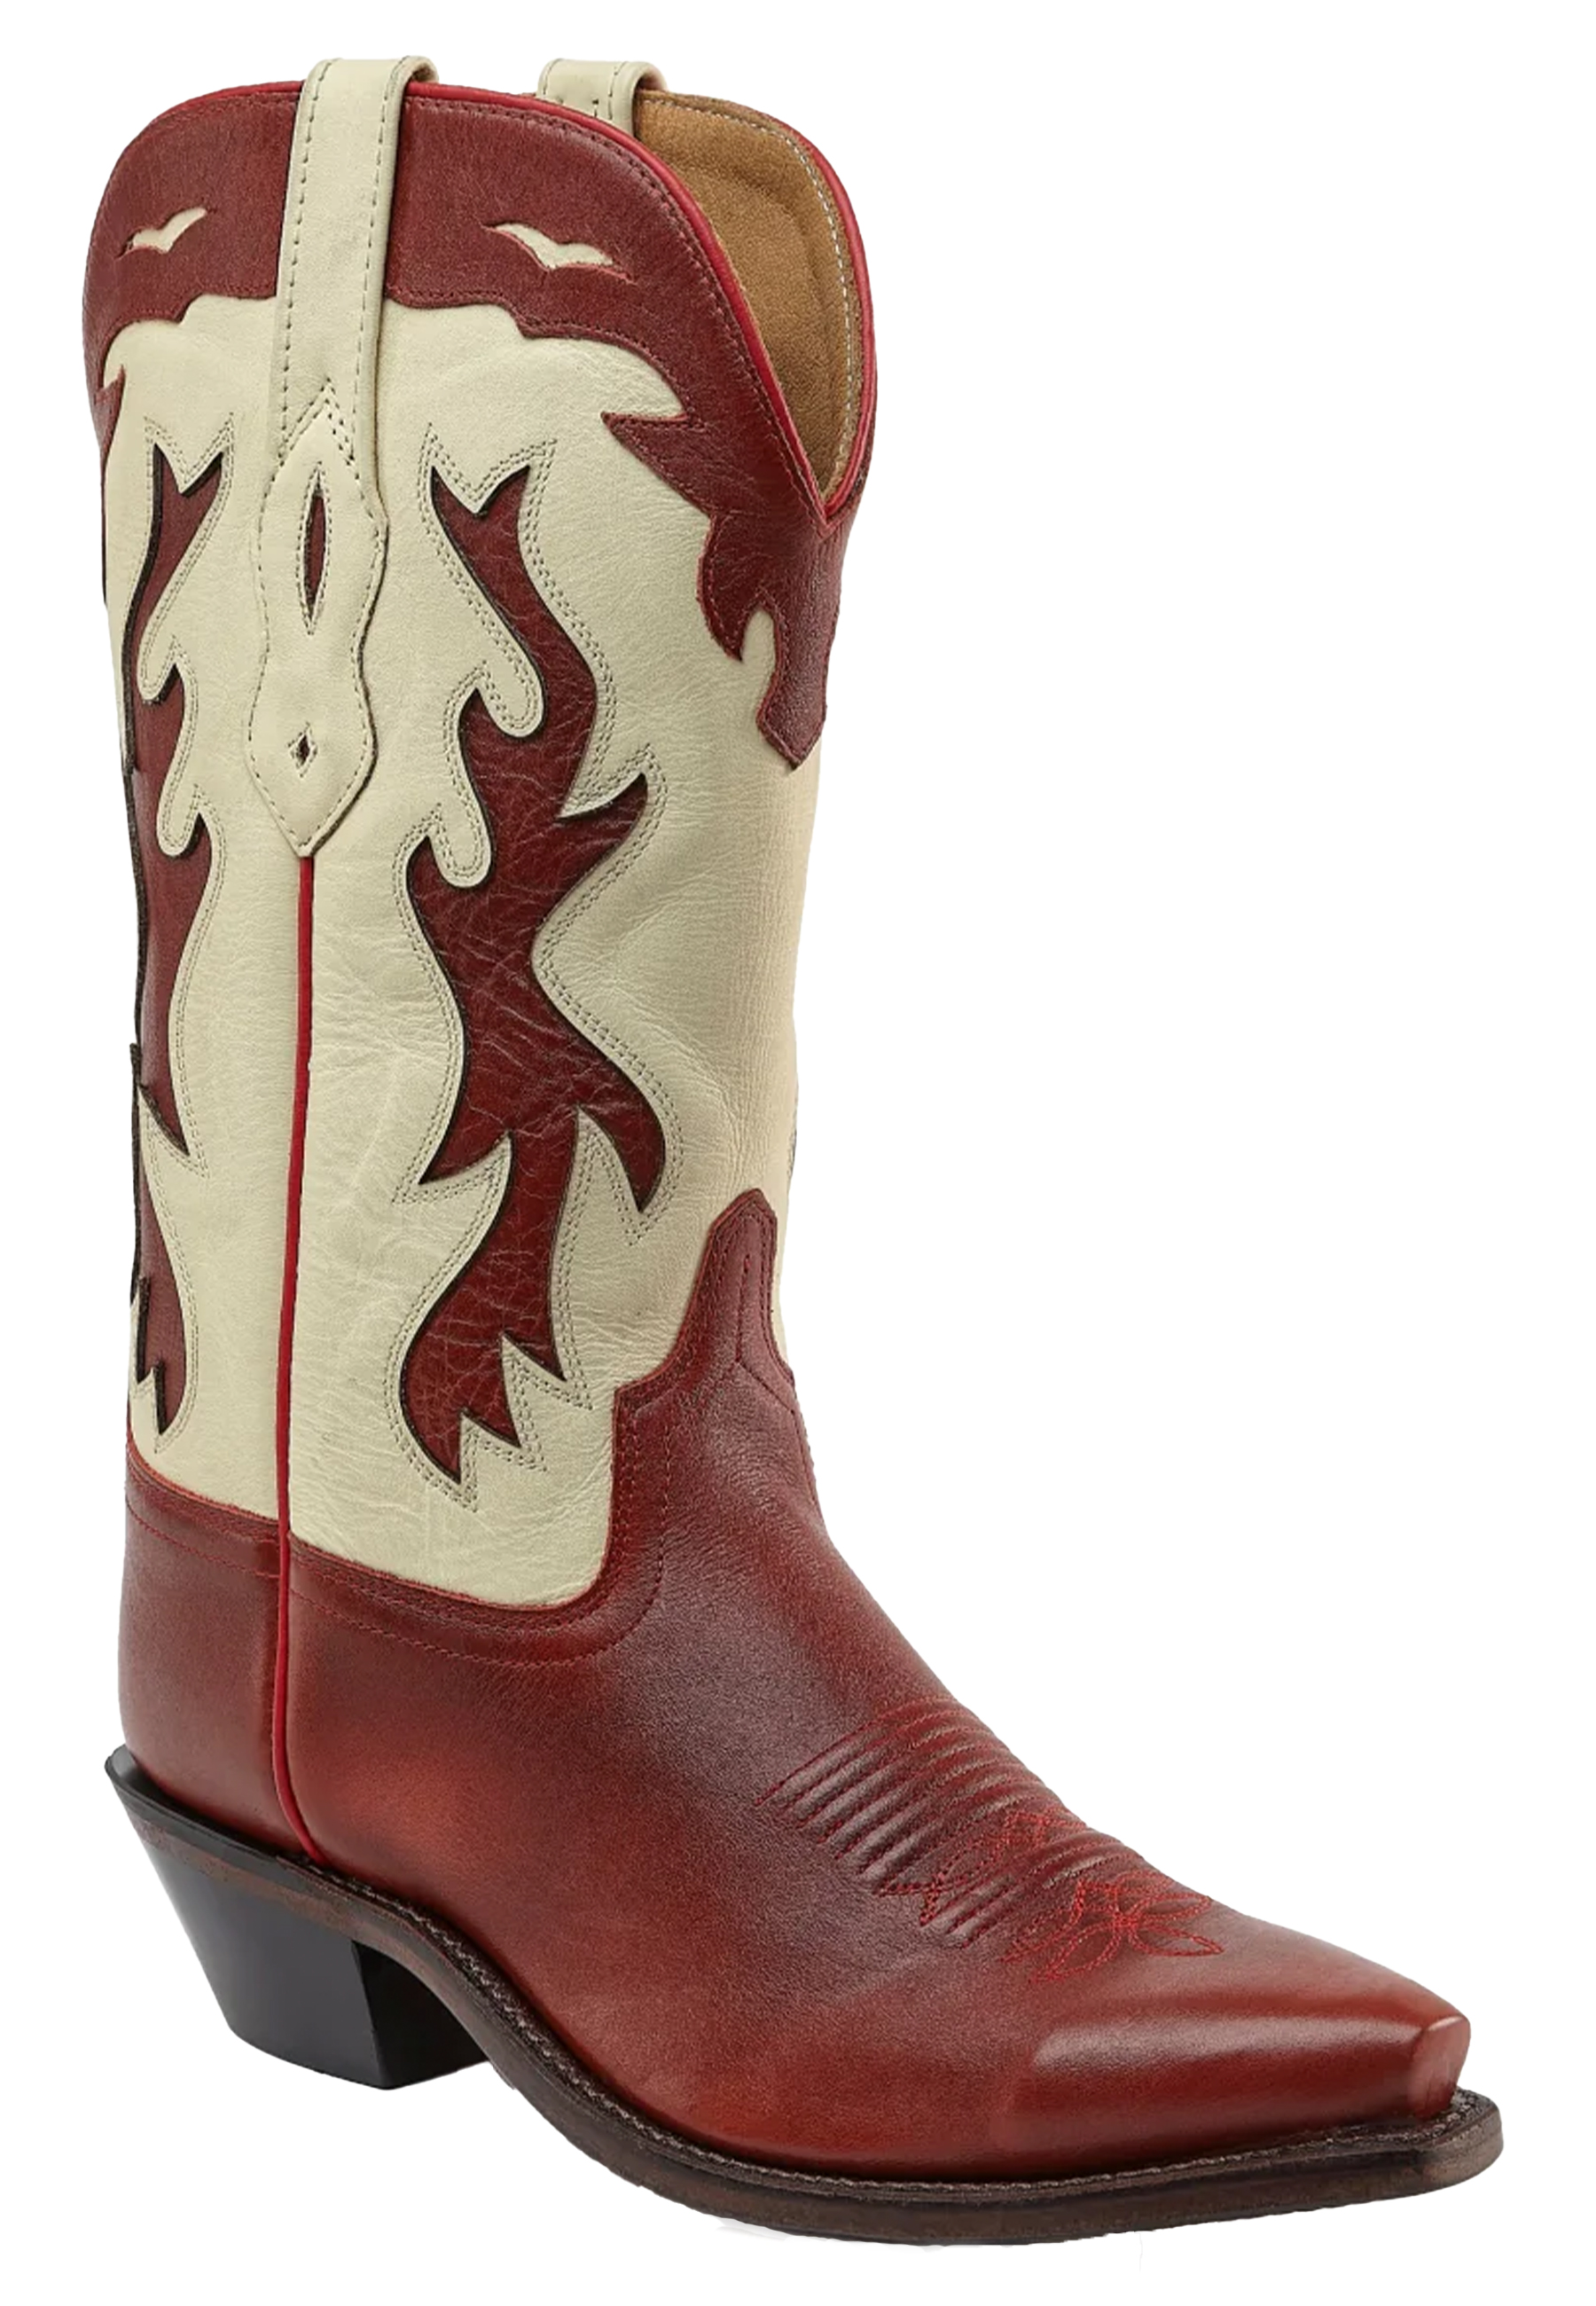 Bootstock Laarzen Rood Leer maat 37 Vegas cowboy laarzen rood